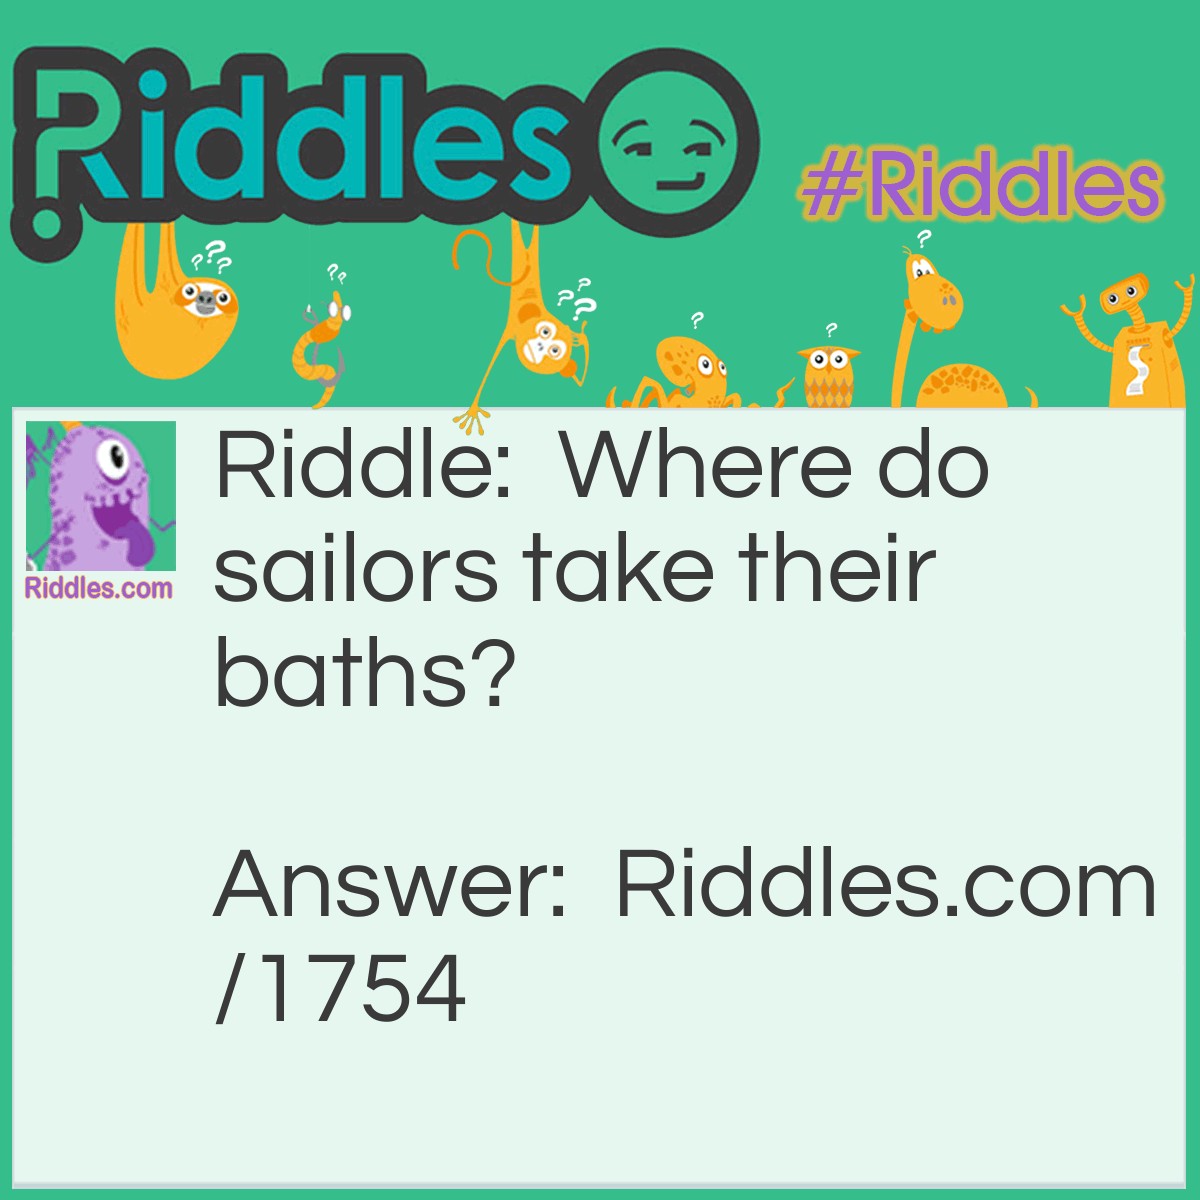 Riddle: Where do sailors take their baths? Answer: In a tubmarine.